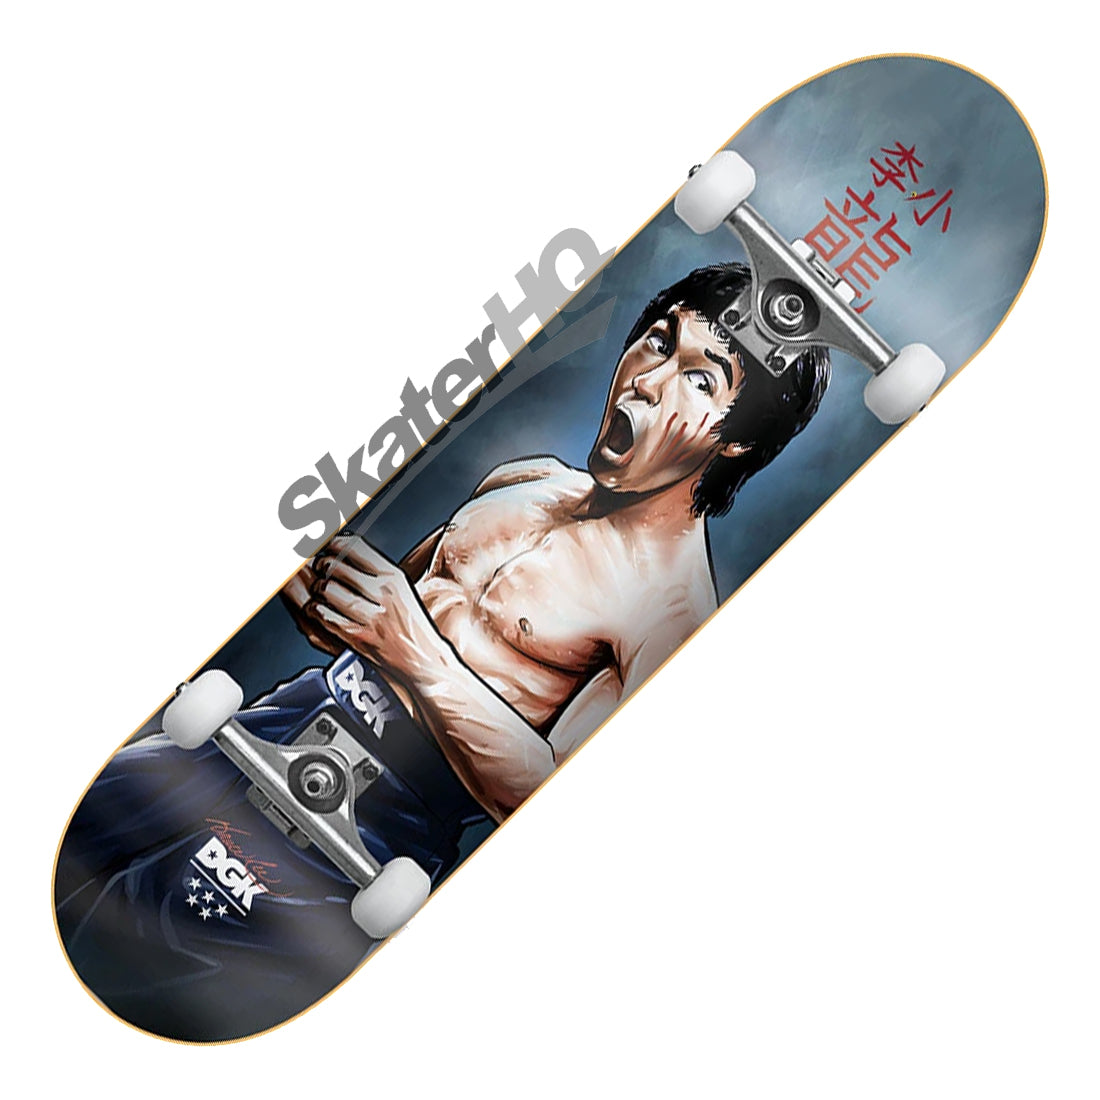 DGK Bruce Lee 8.0 Focused Complete Skateboard Completes Modern Street